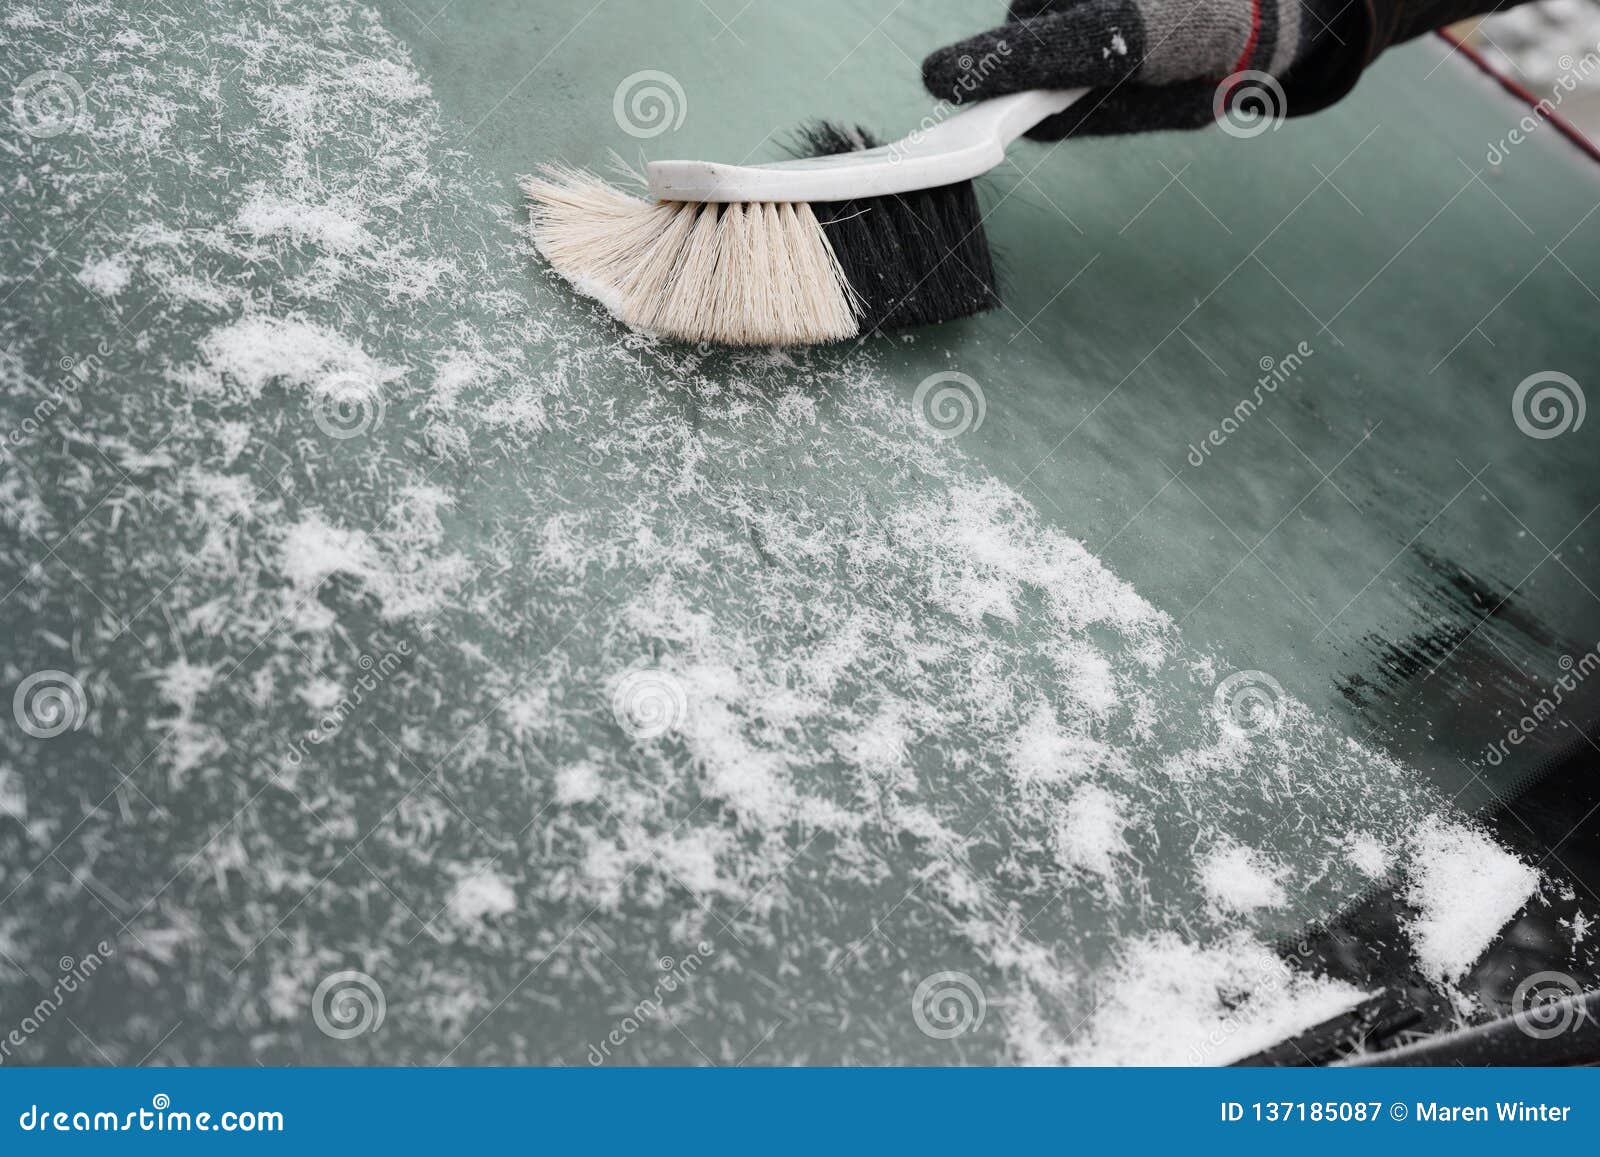 Handbesen Fegt Den Schnee Von Der Windschutzscheibe Eines Autos Im Winter,  Kopienraum Stockbild - Bild von transport, frost: 137185087